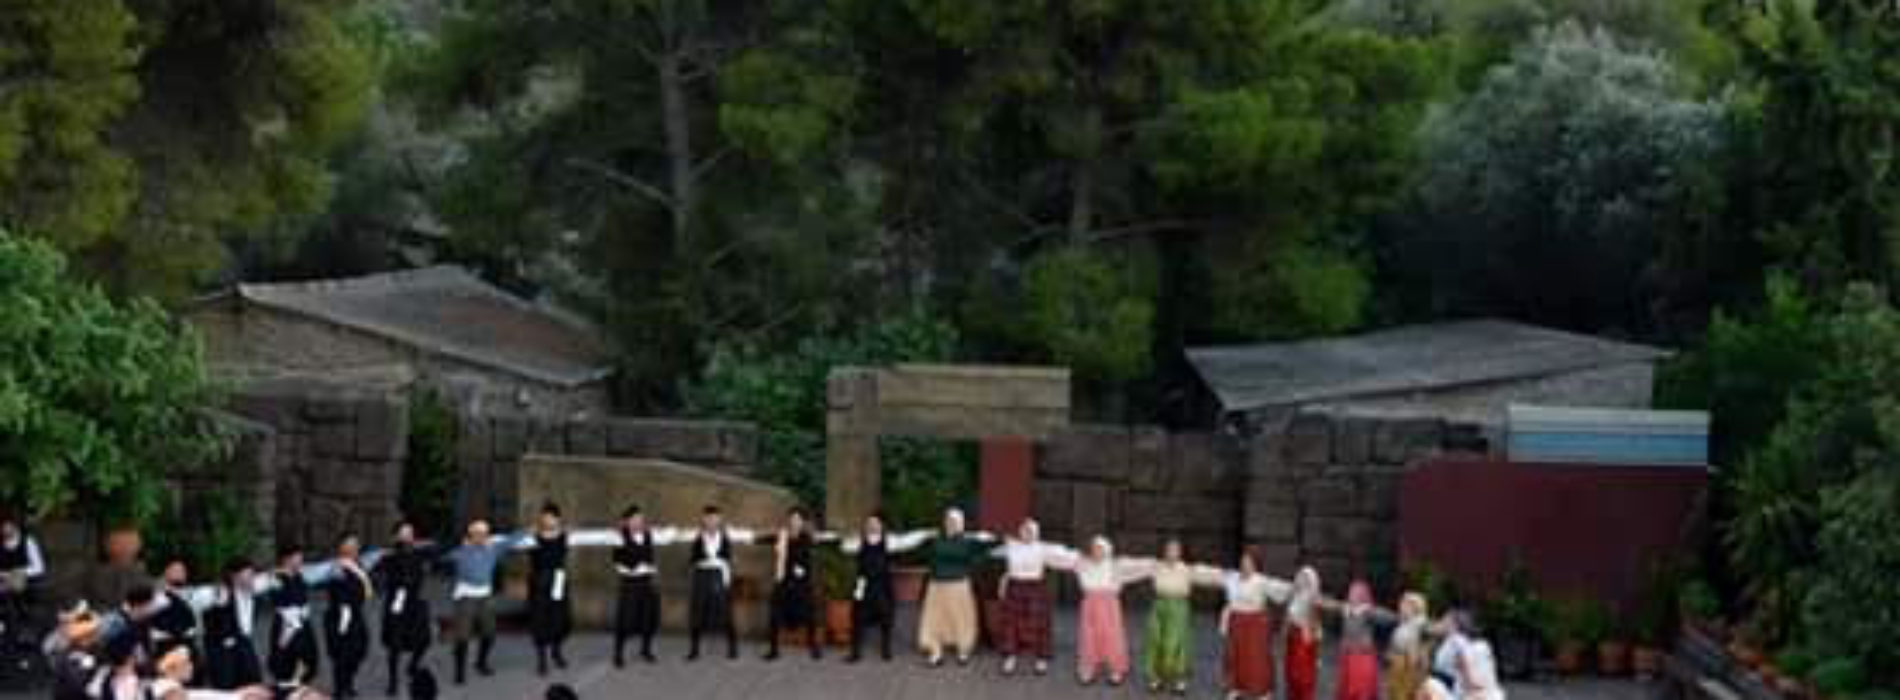 6ο Φεστιβάλ Παραδοσιακού Χορού και μουσικής Πάτμου – Δελτίο Τύπου